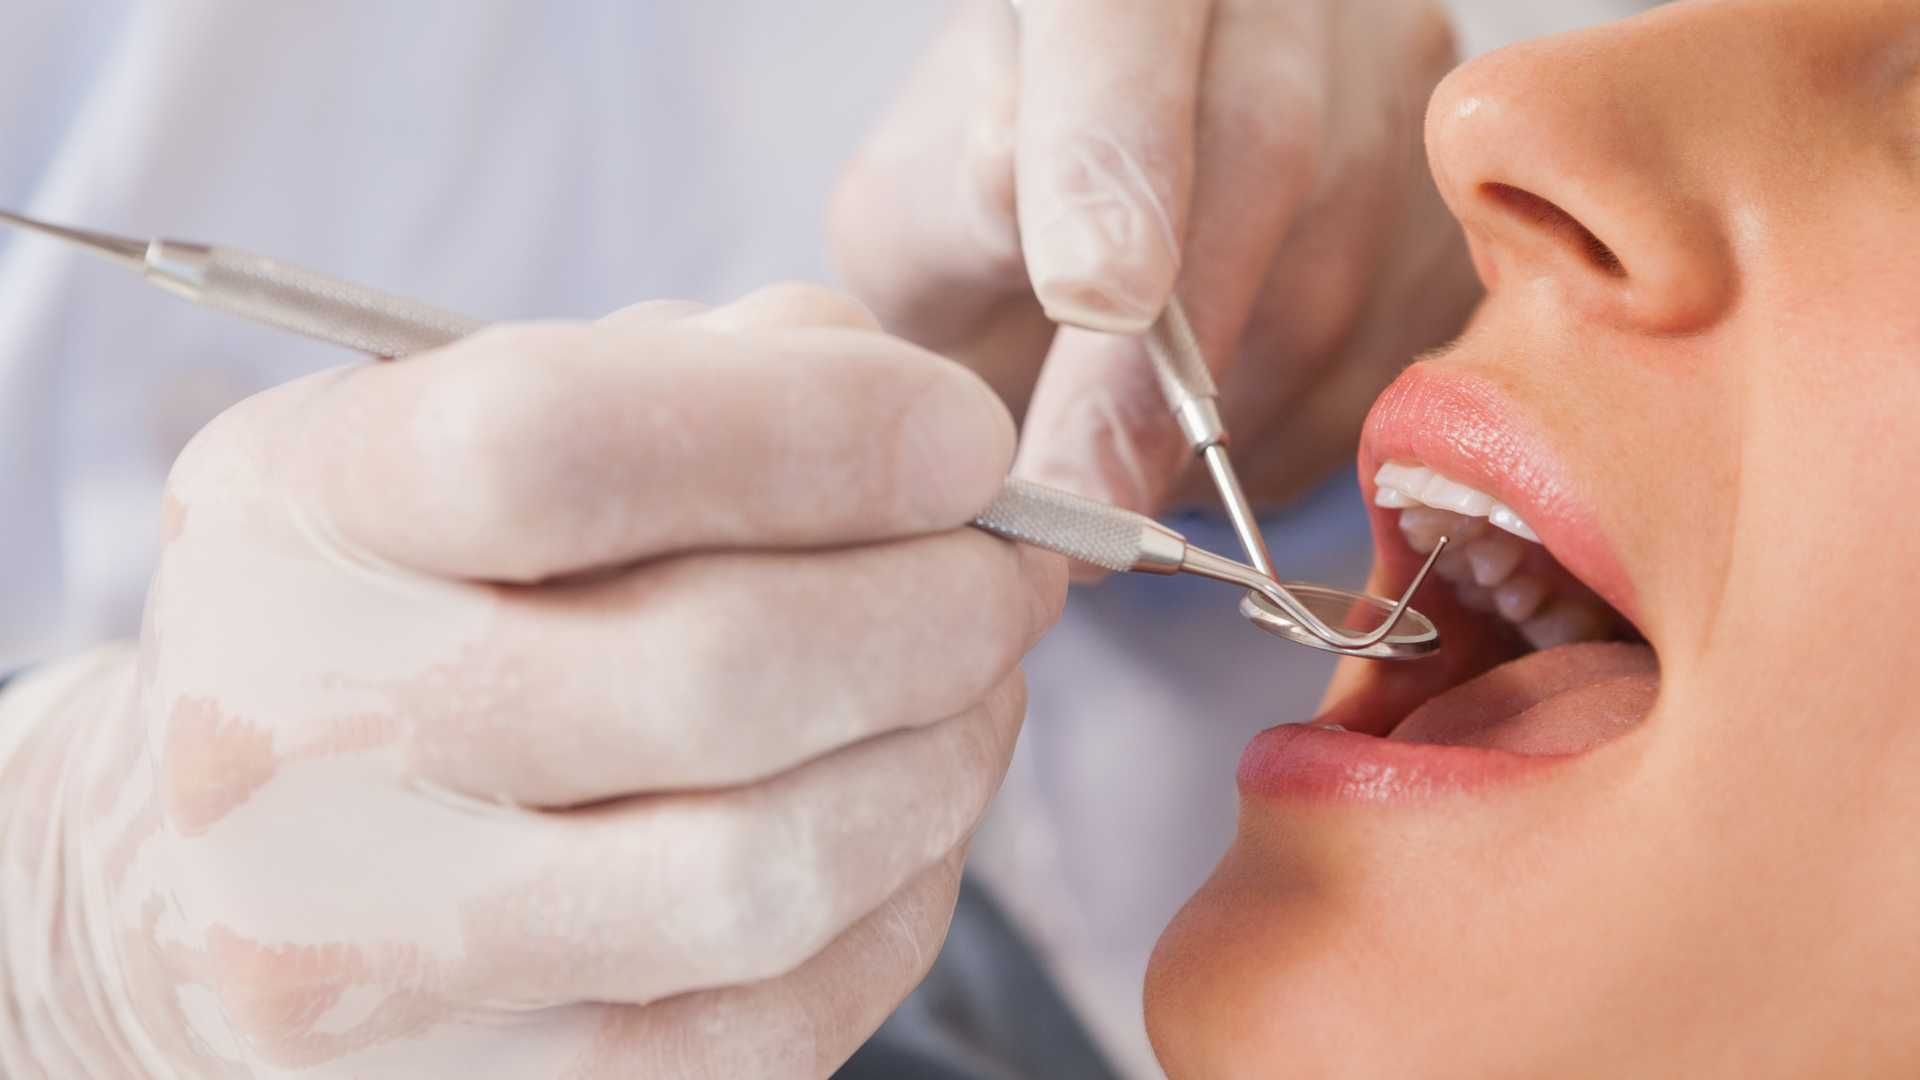 پرکردن دندان سه سطحی با کامپوزیت آمریکایی دکتر کاملیا علیجانی در تهران 1